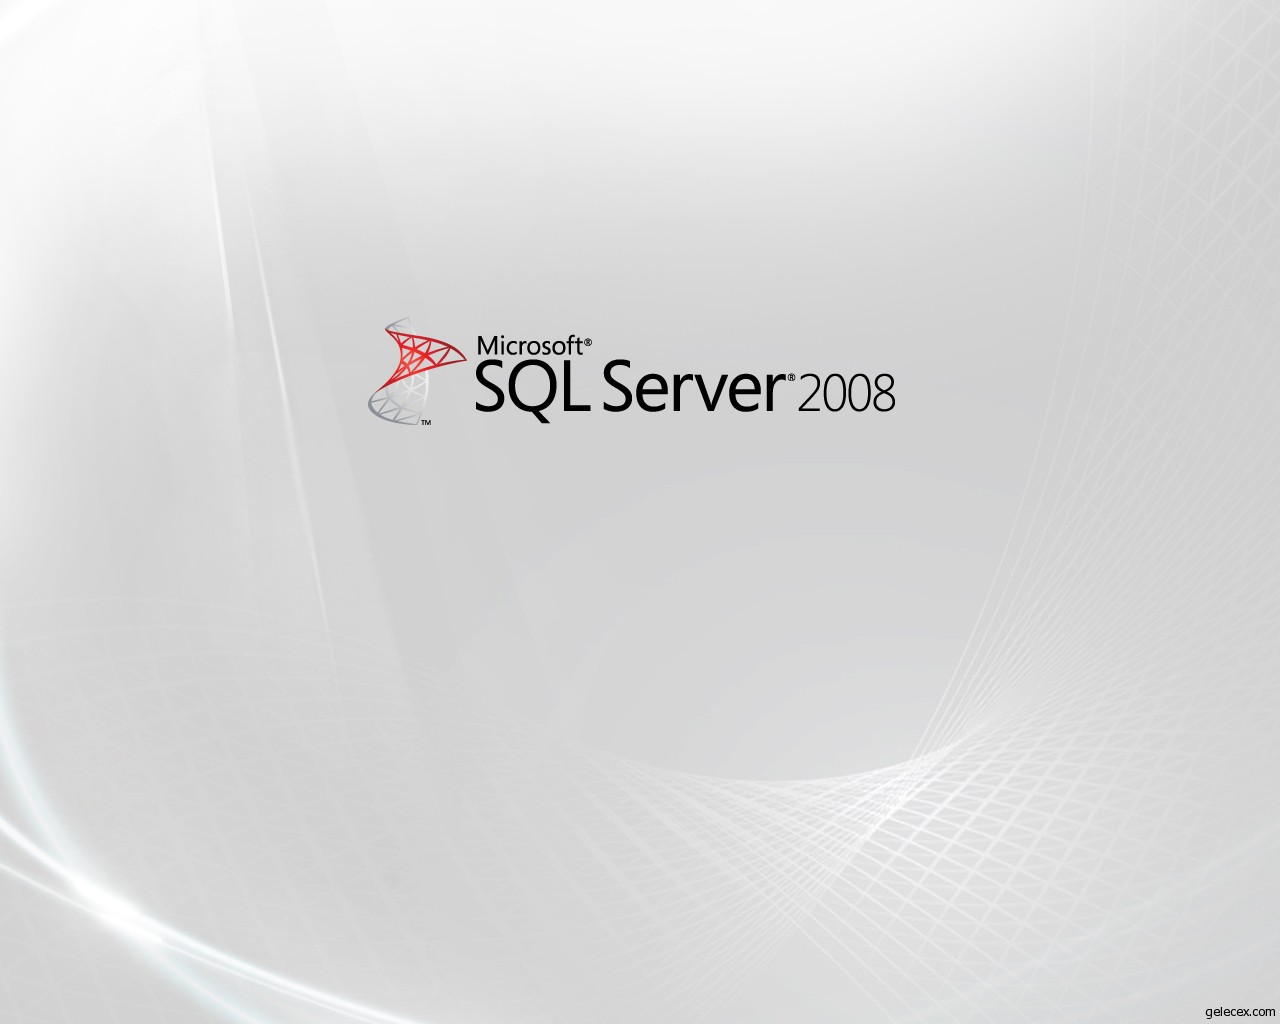 SQL Server 2008 lemler zellikler ve Tanmlar